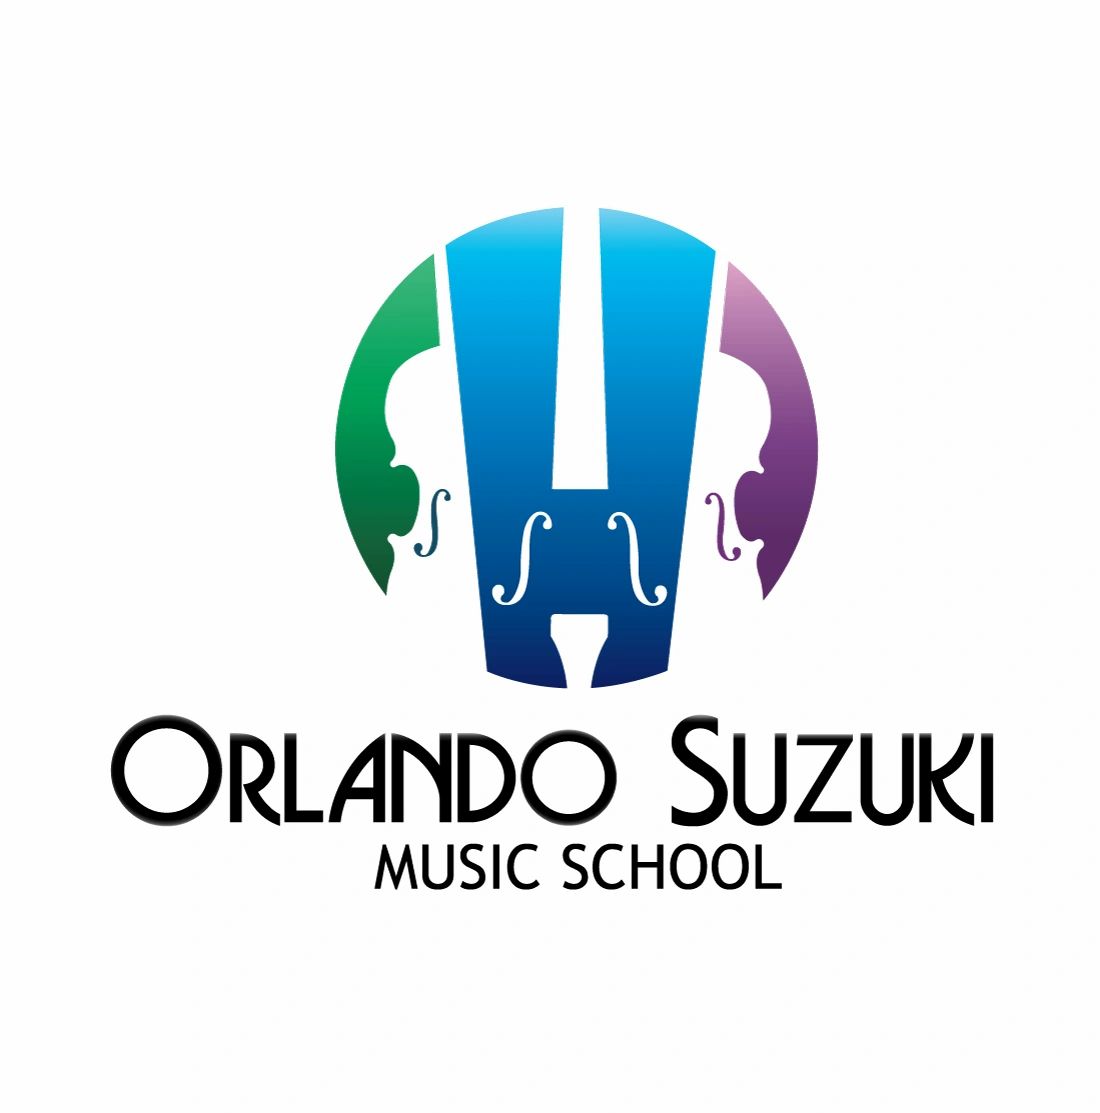 Orlando Suzuki Music School